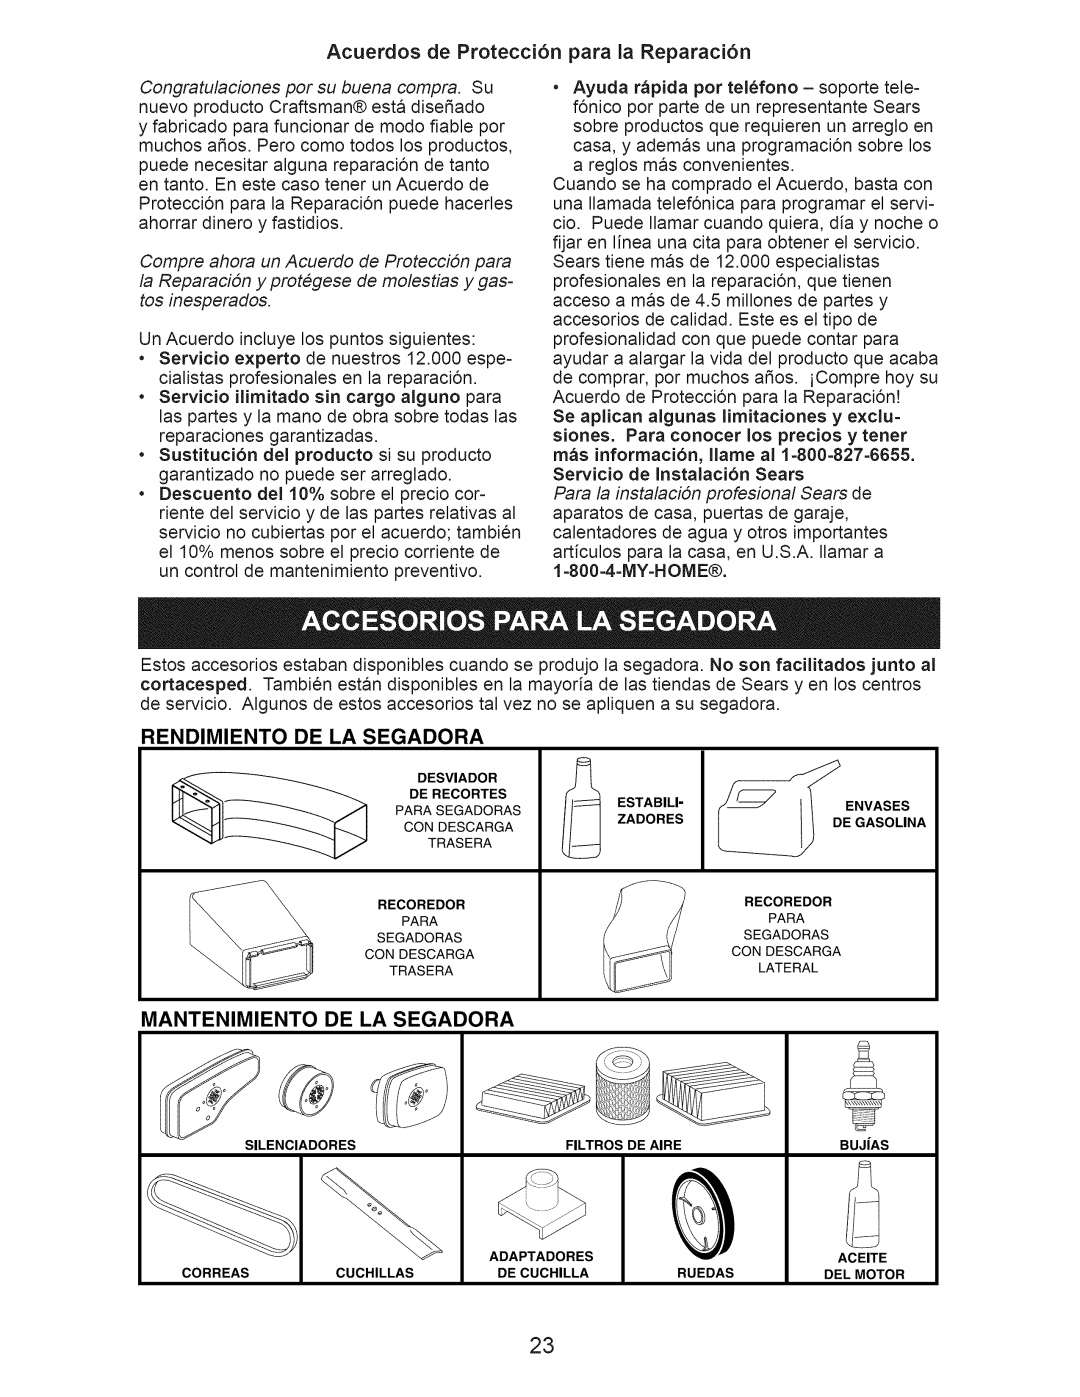 Craftsman 37062 Acuerdos de Protecci6n para la Reparaci6n, Rendimiento De La Segadora, Mantenimiento De La Segadora 